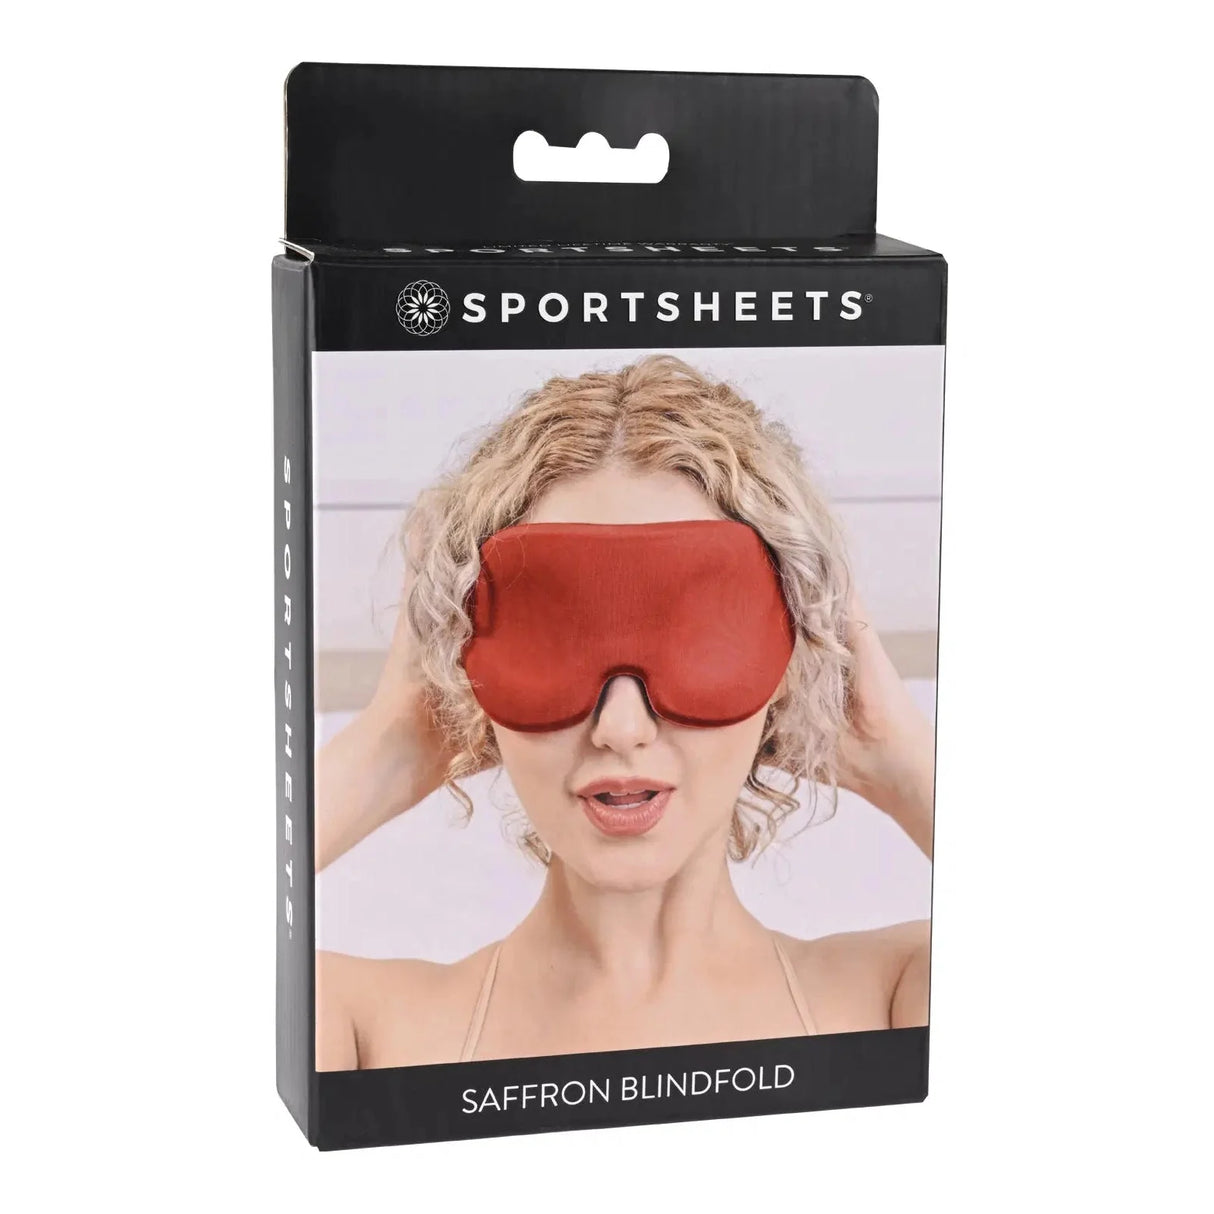 Saffron Blindfold